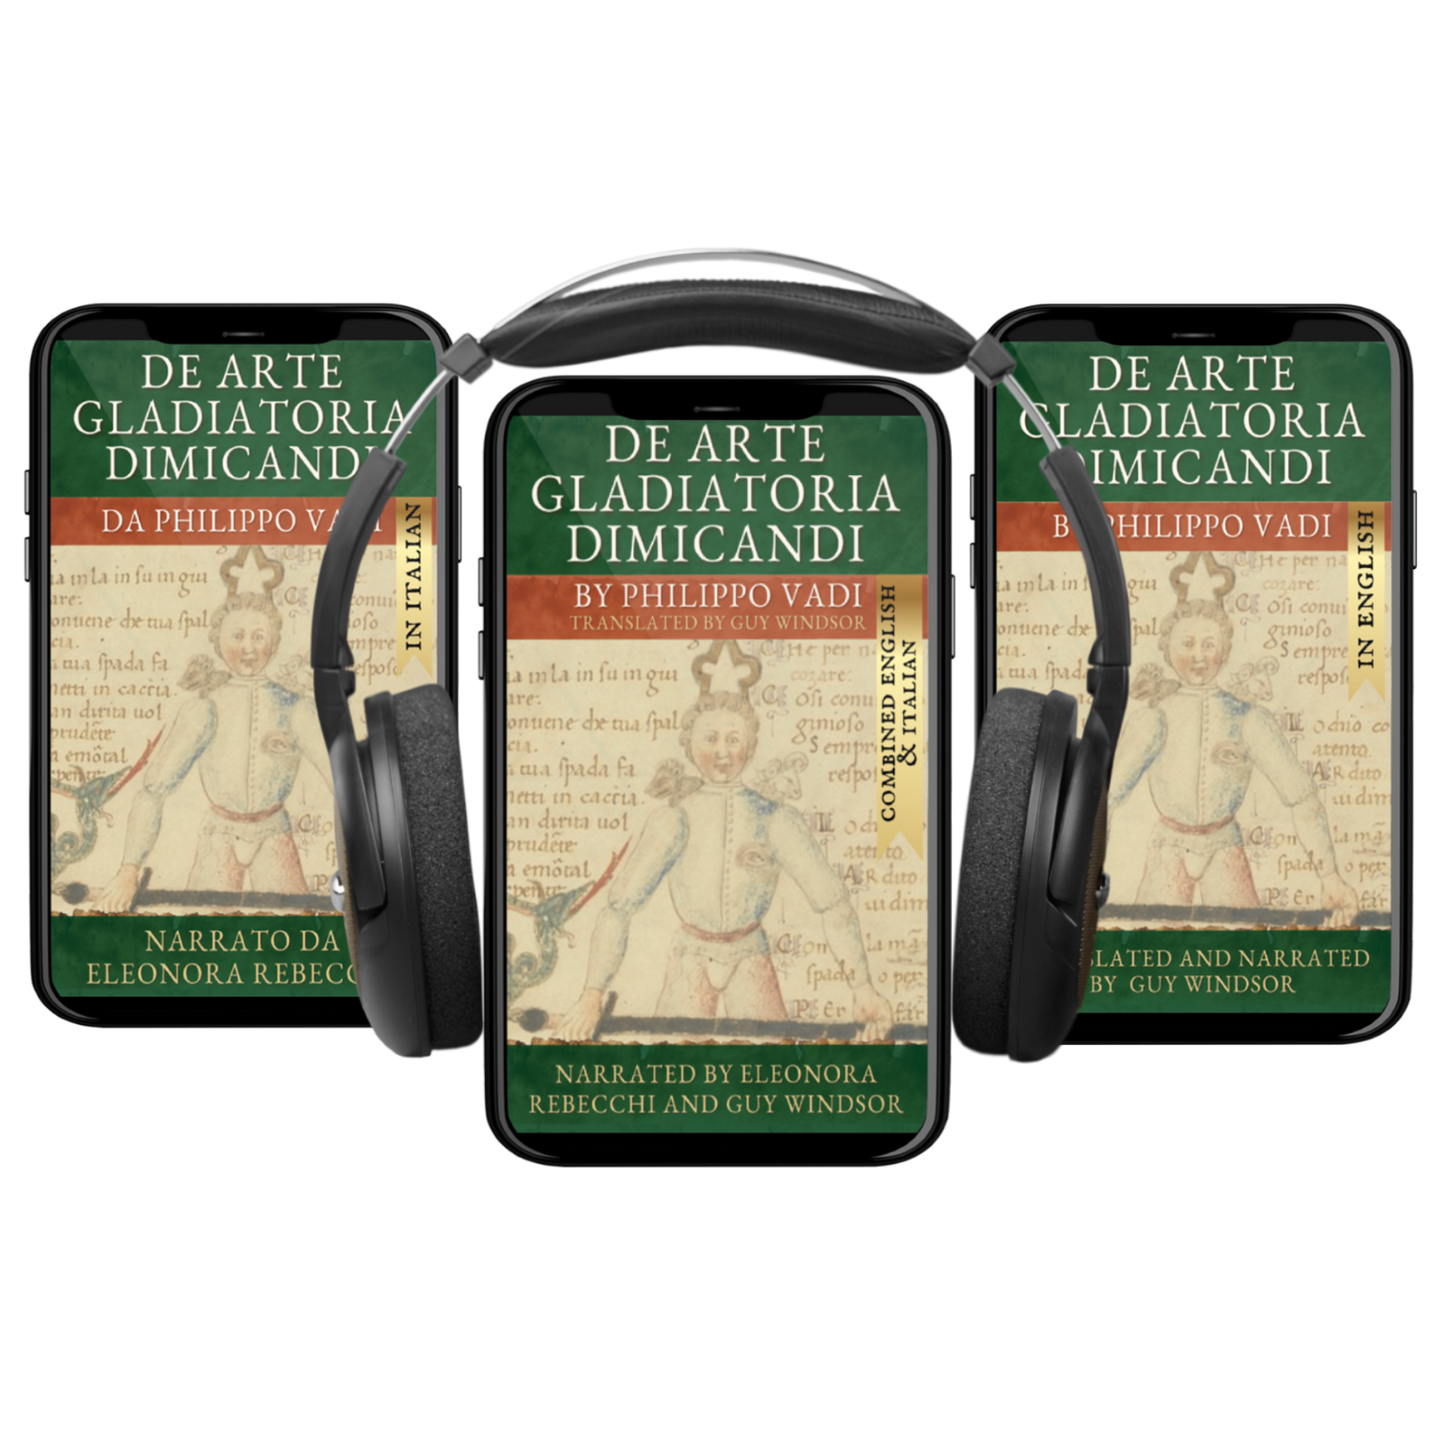 De Arte Gladiatoria Dimicandi in audio (in Italian and English)